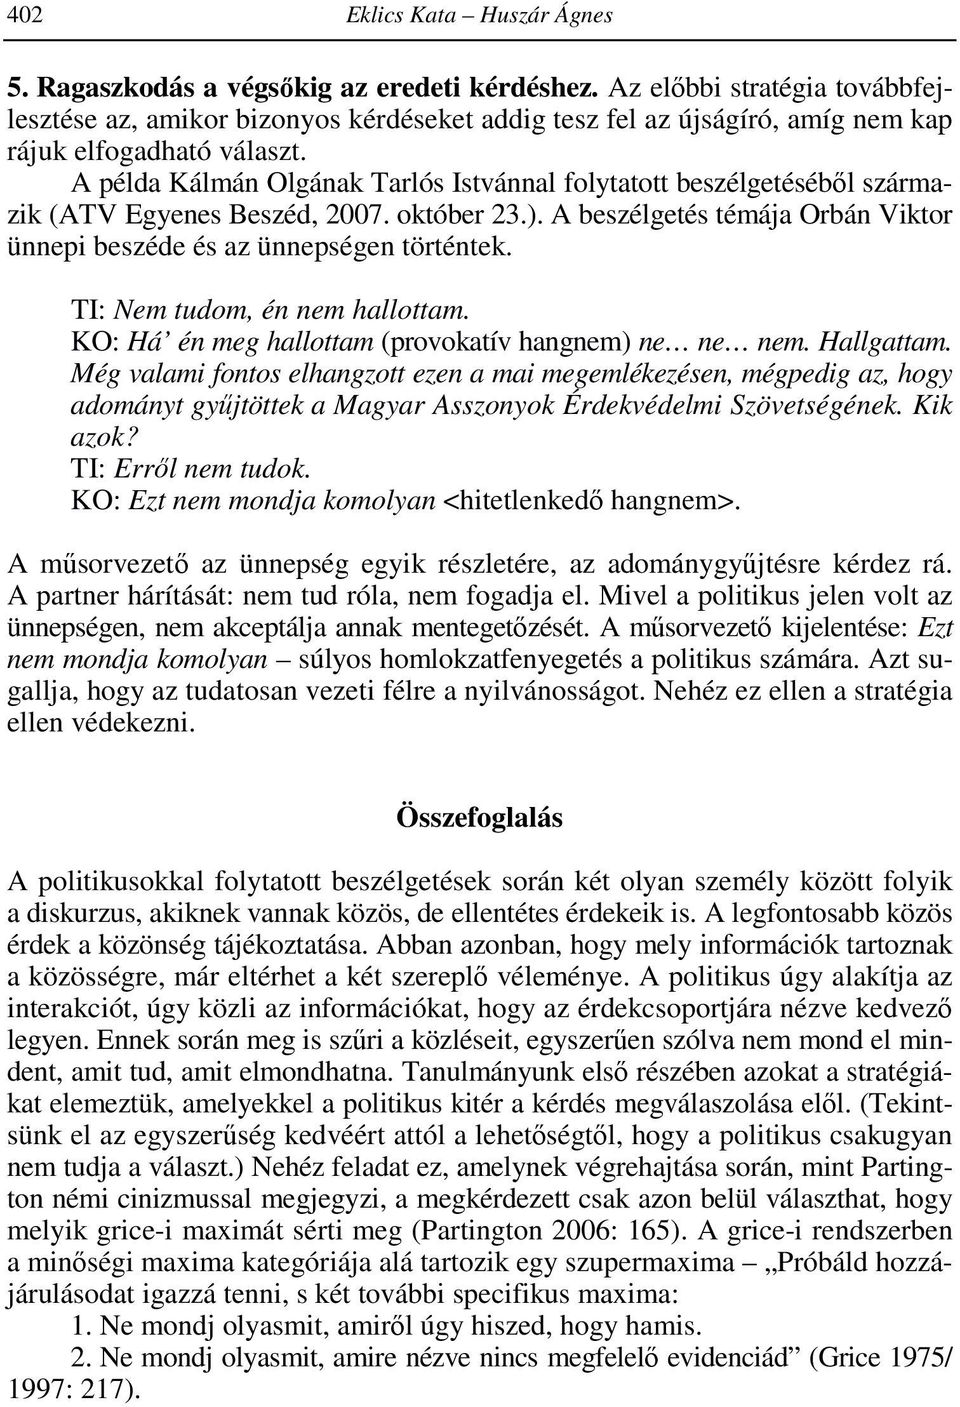 A példa Kálmán Olgának Tarlós Istvánnal folytatott beszélgetéséből származik (ATV Egyenes Beszéd, 2007. október 23.). A beszélgetés témája Orbán Viktor ünnepi beszéde és az ünnepségen történtek.